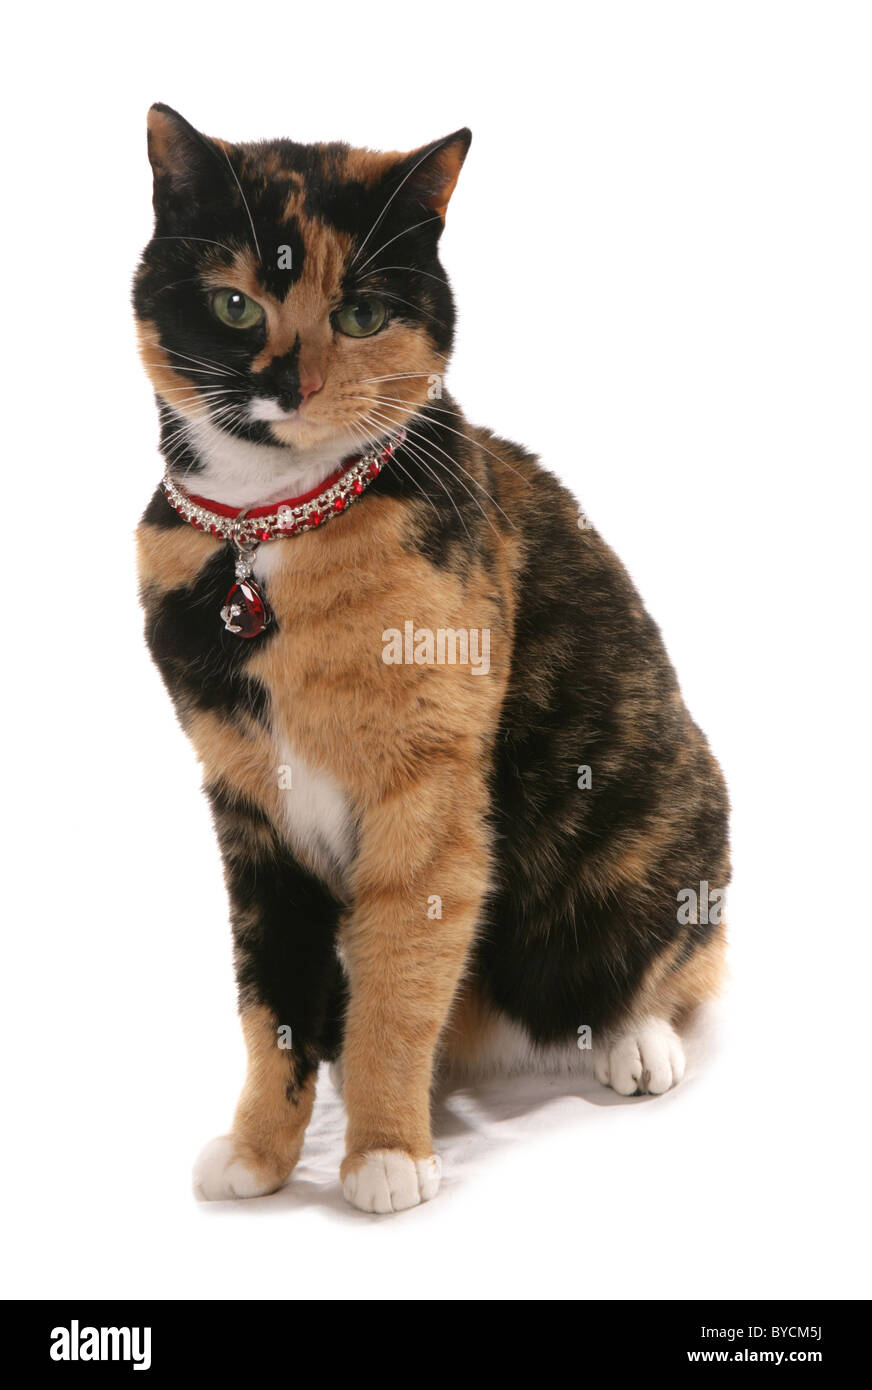 Tortieshell cat con bling collar y encanto sentado studio Foto de stock